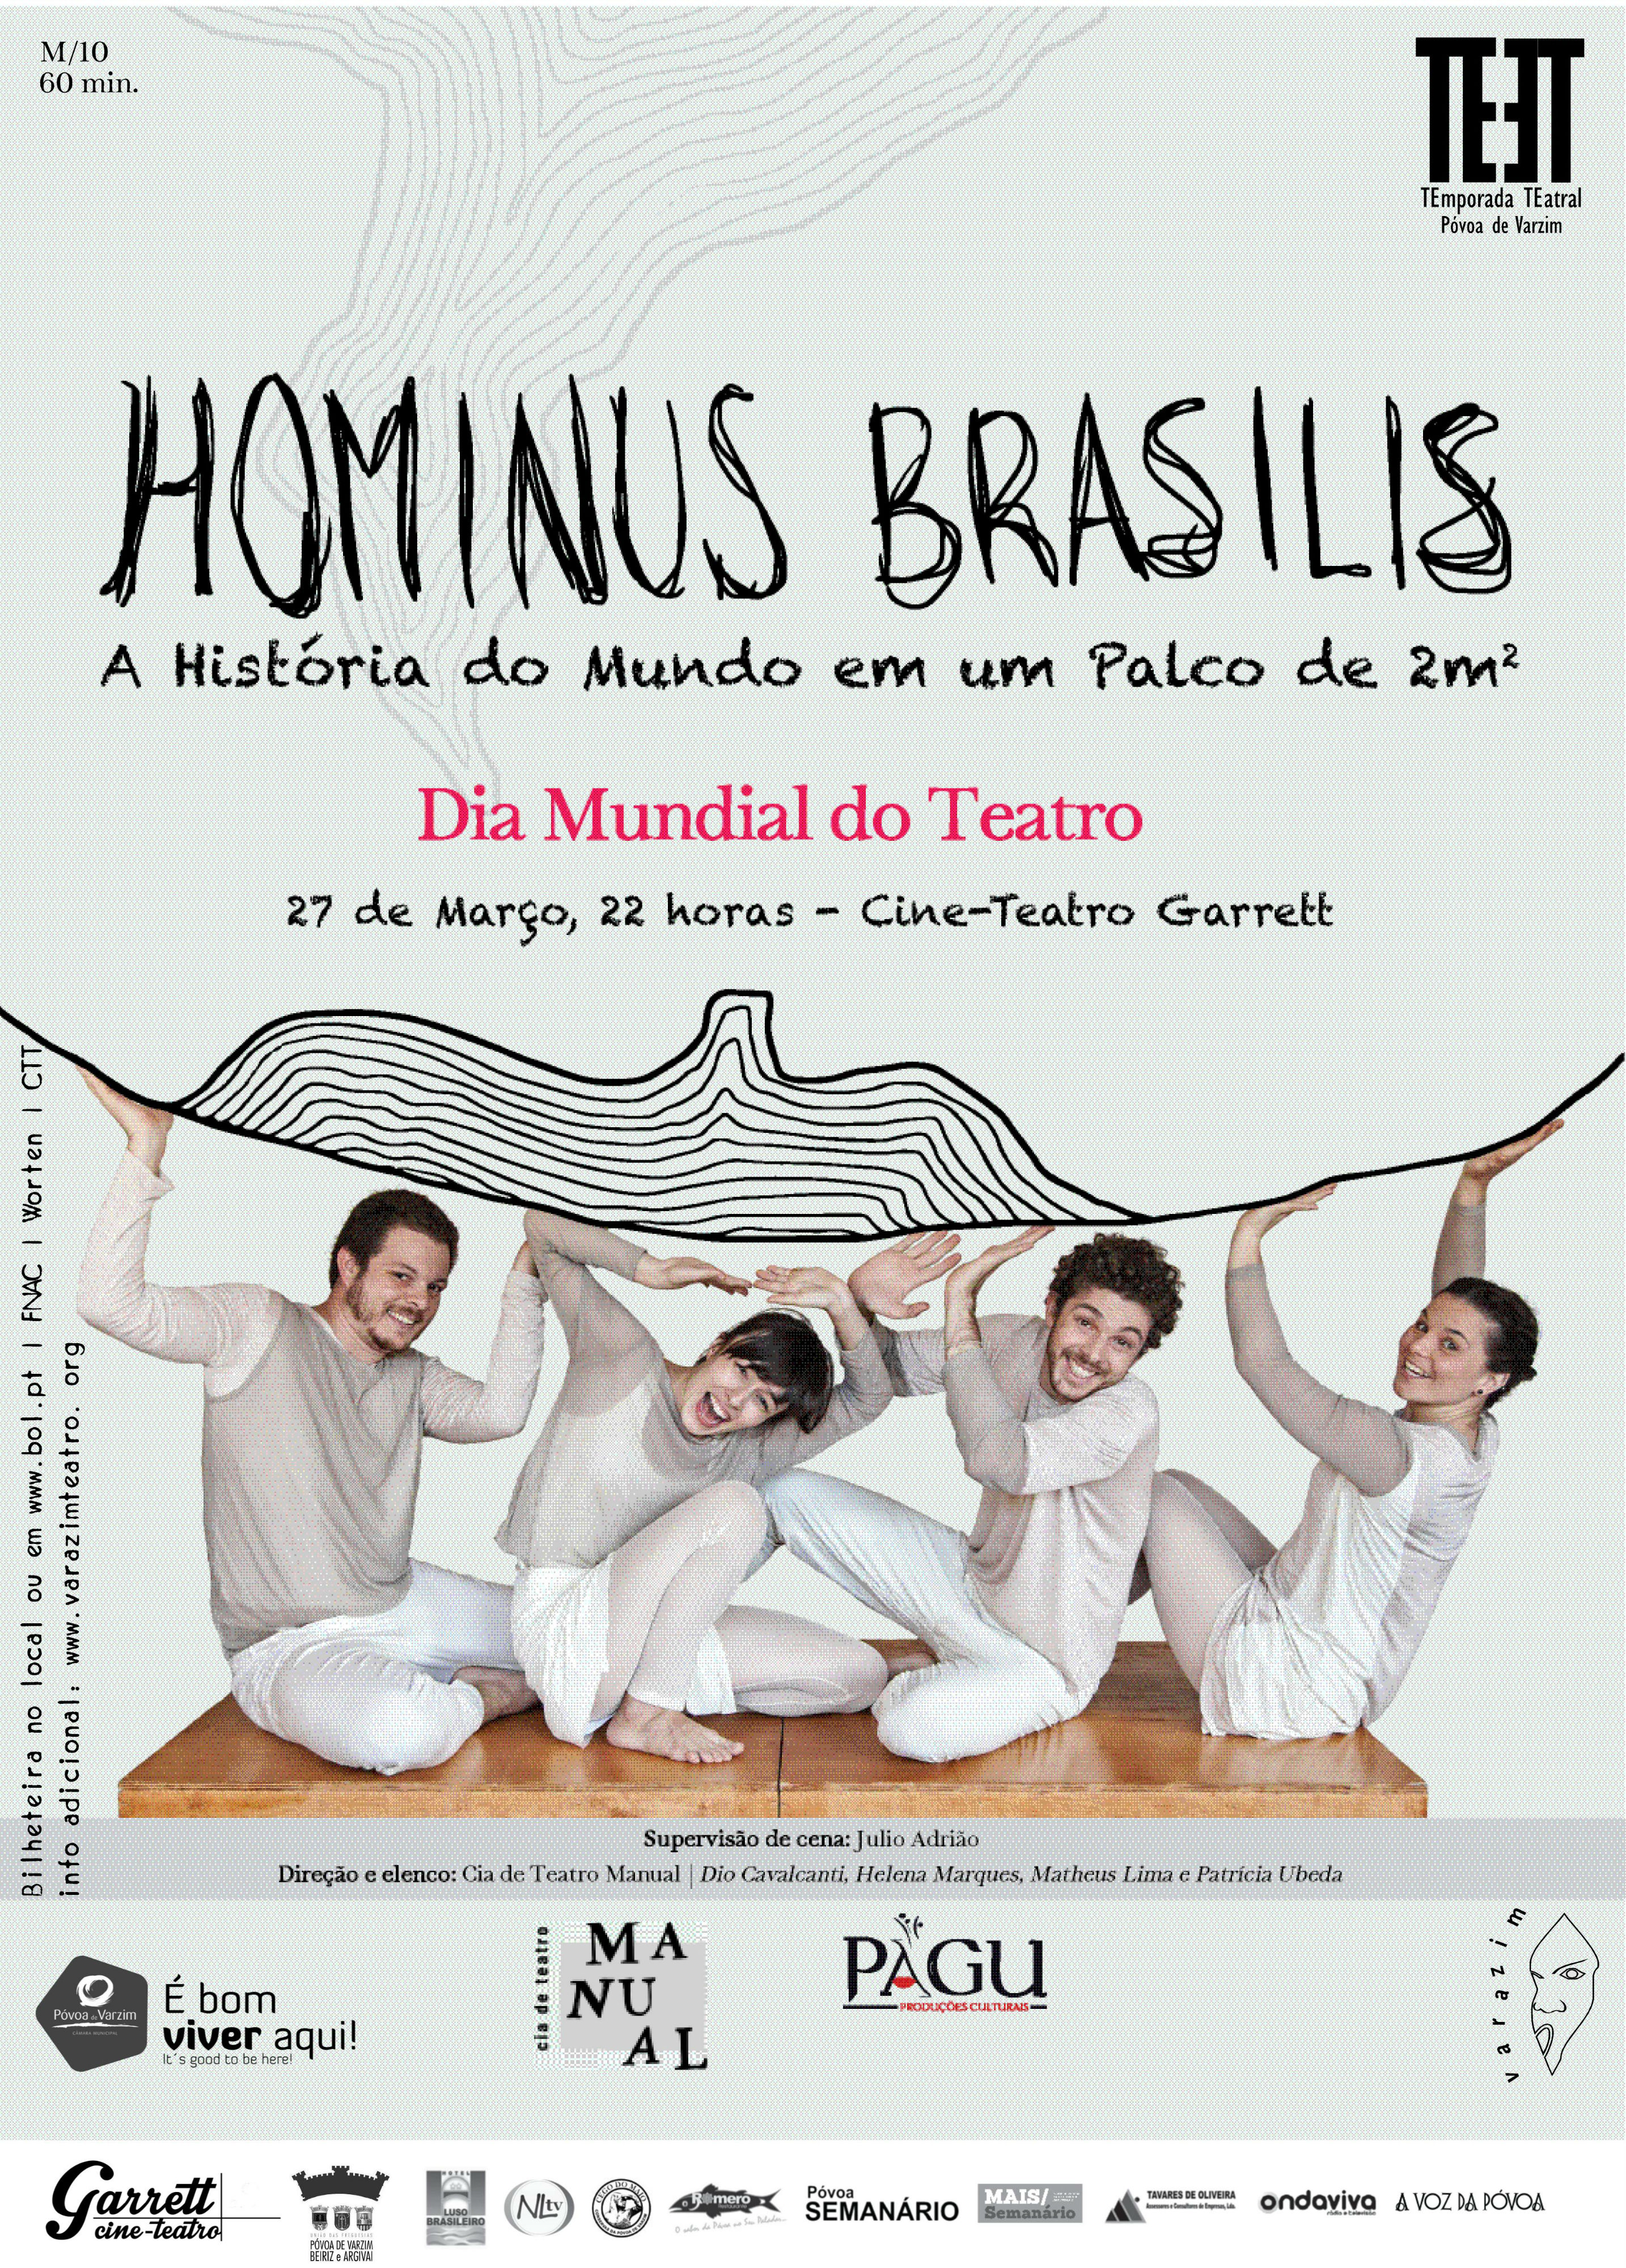 "Hominus Brasilis" em exibição no Cine-teatro Garrett